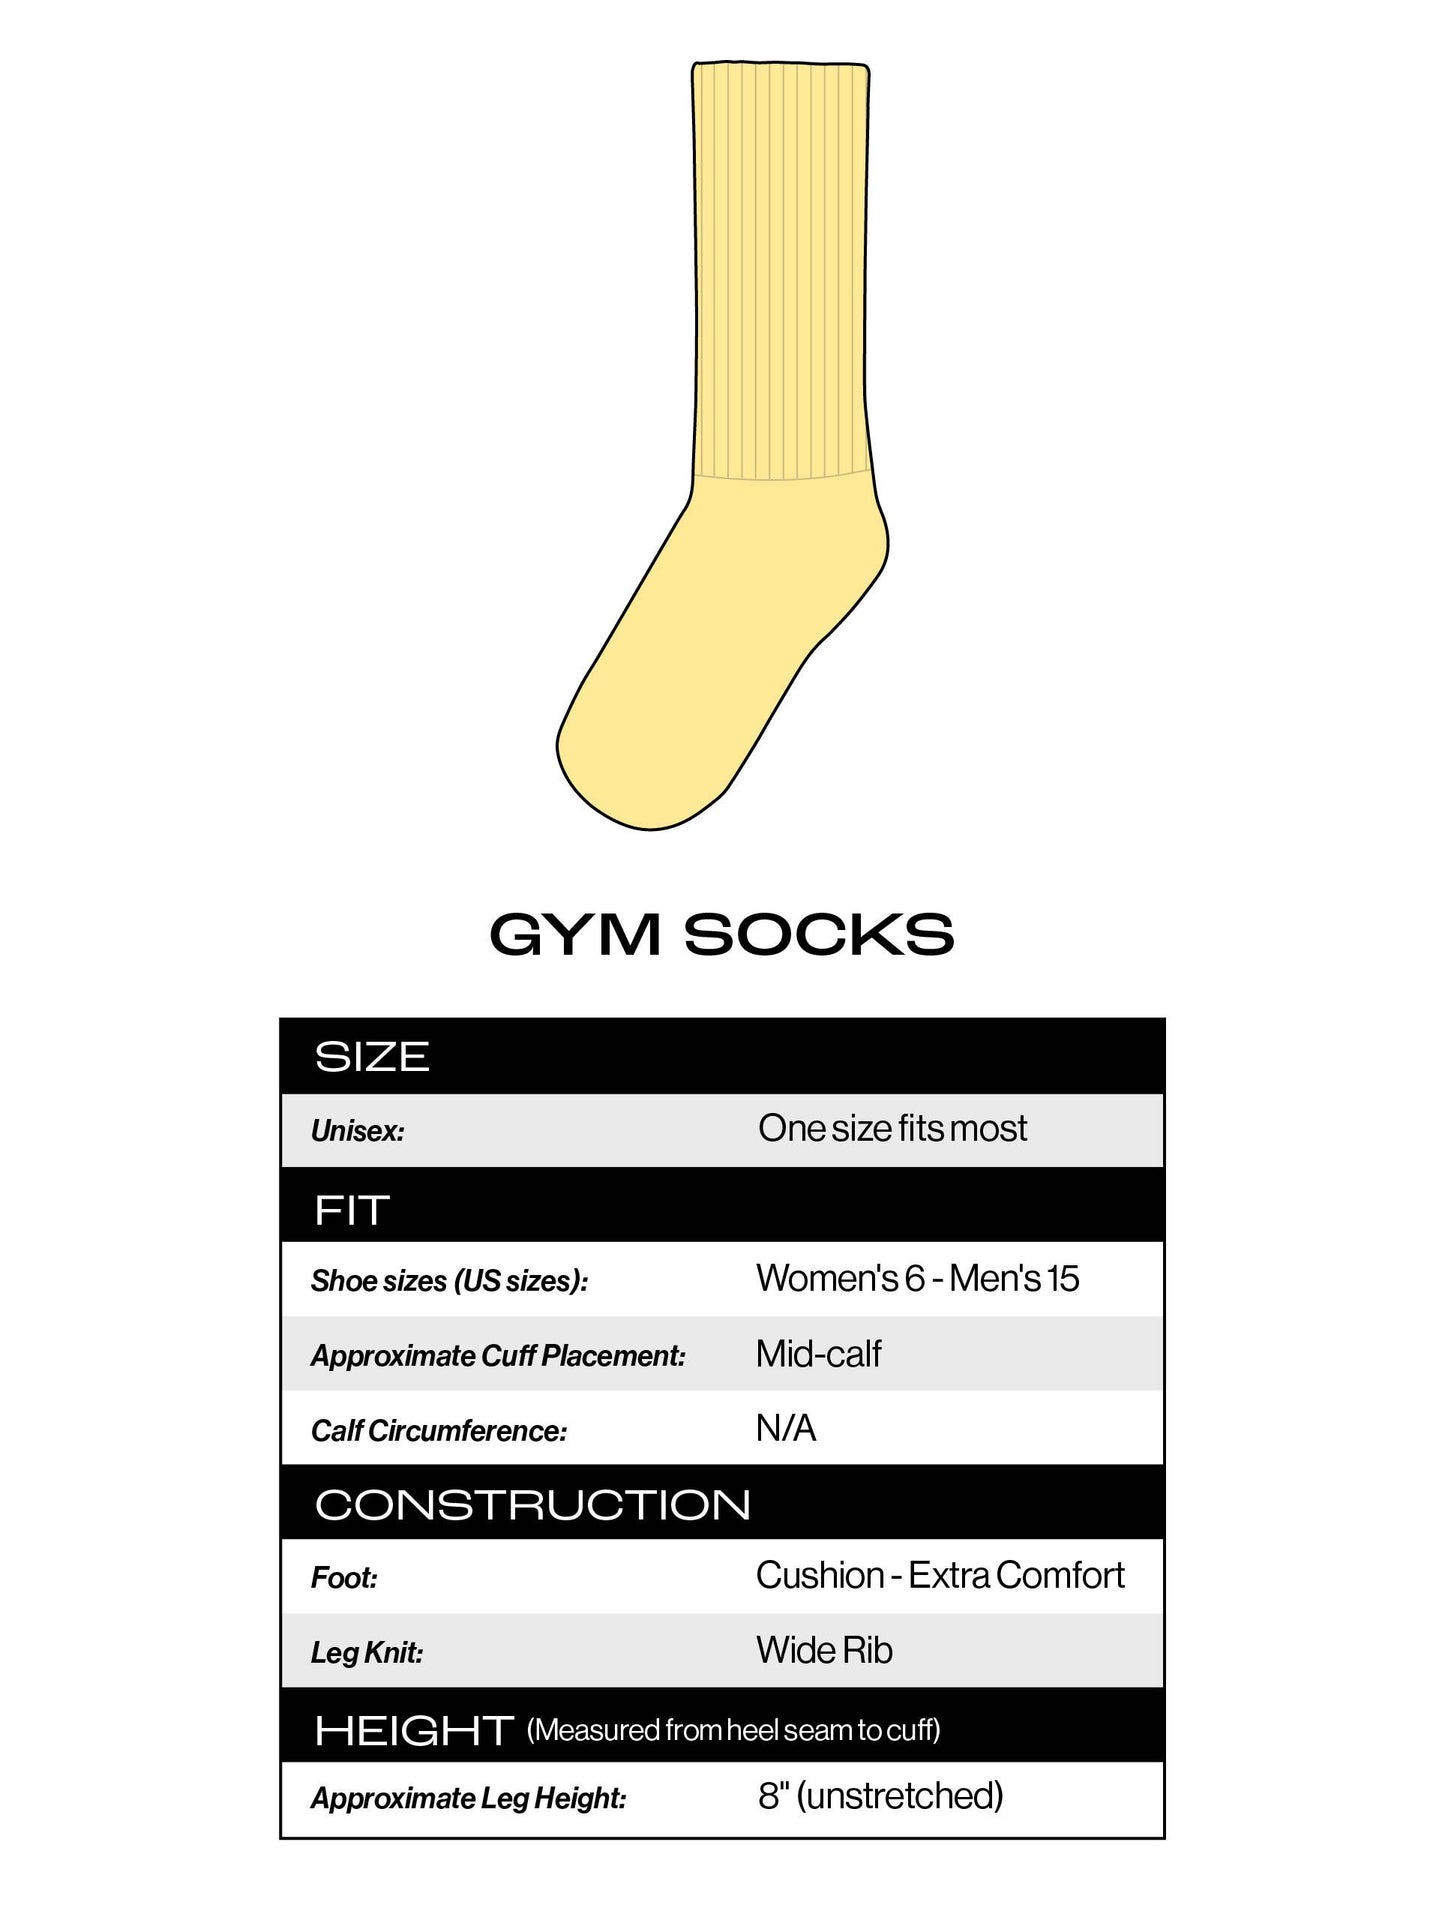 Bitch Gym Crew Socks